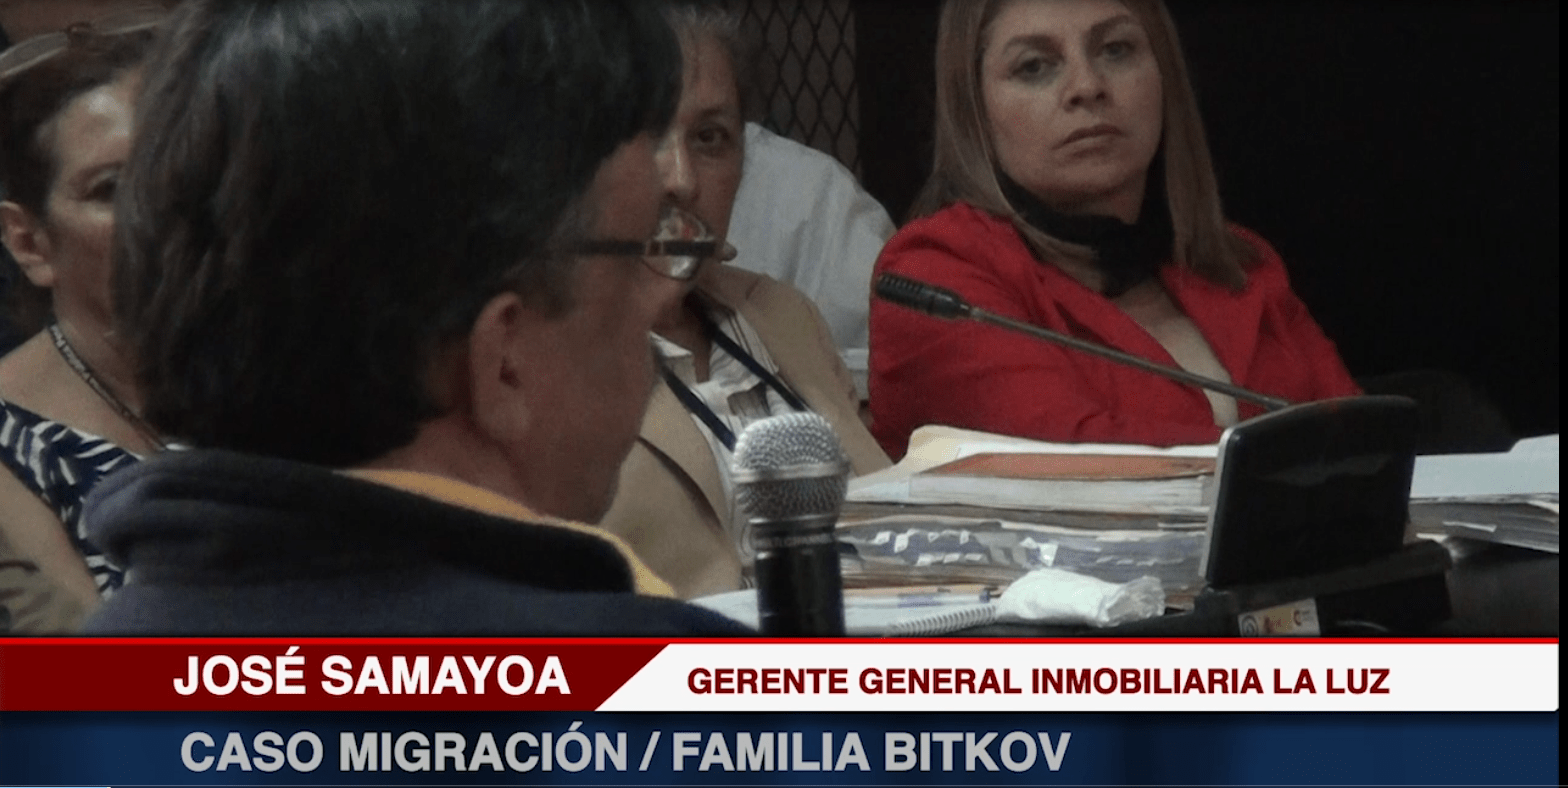 José Samayoa Gerente General Inmobiliaria La Luz - Caso Migración Familia Bitkovs